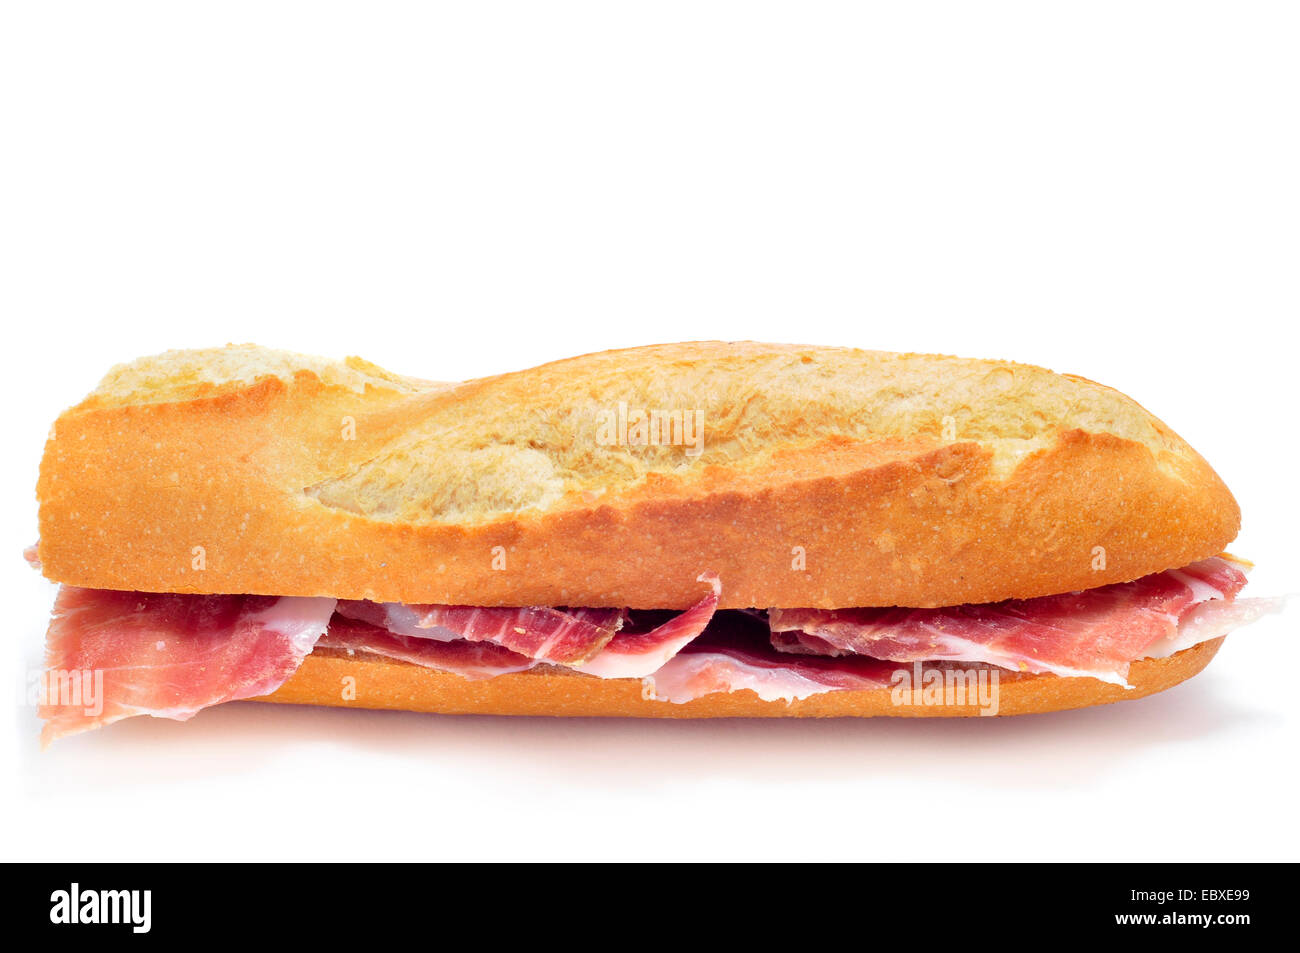 closeup of a spanish bocadillo de jamon serrano, a serrano ham sandwich, on  a white background Stock Photo - Alamy